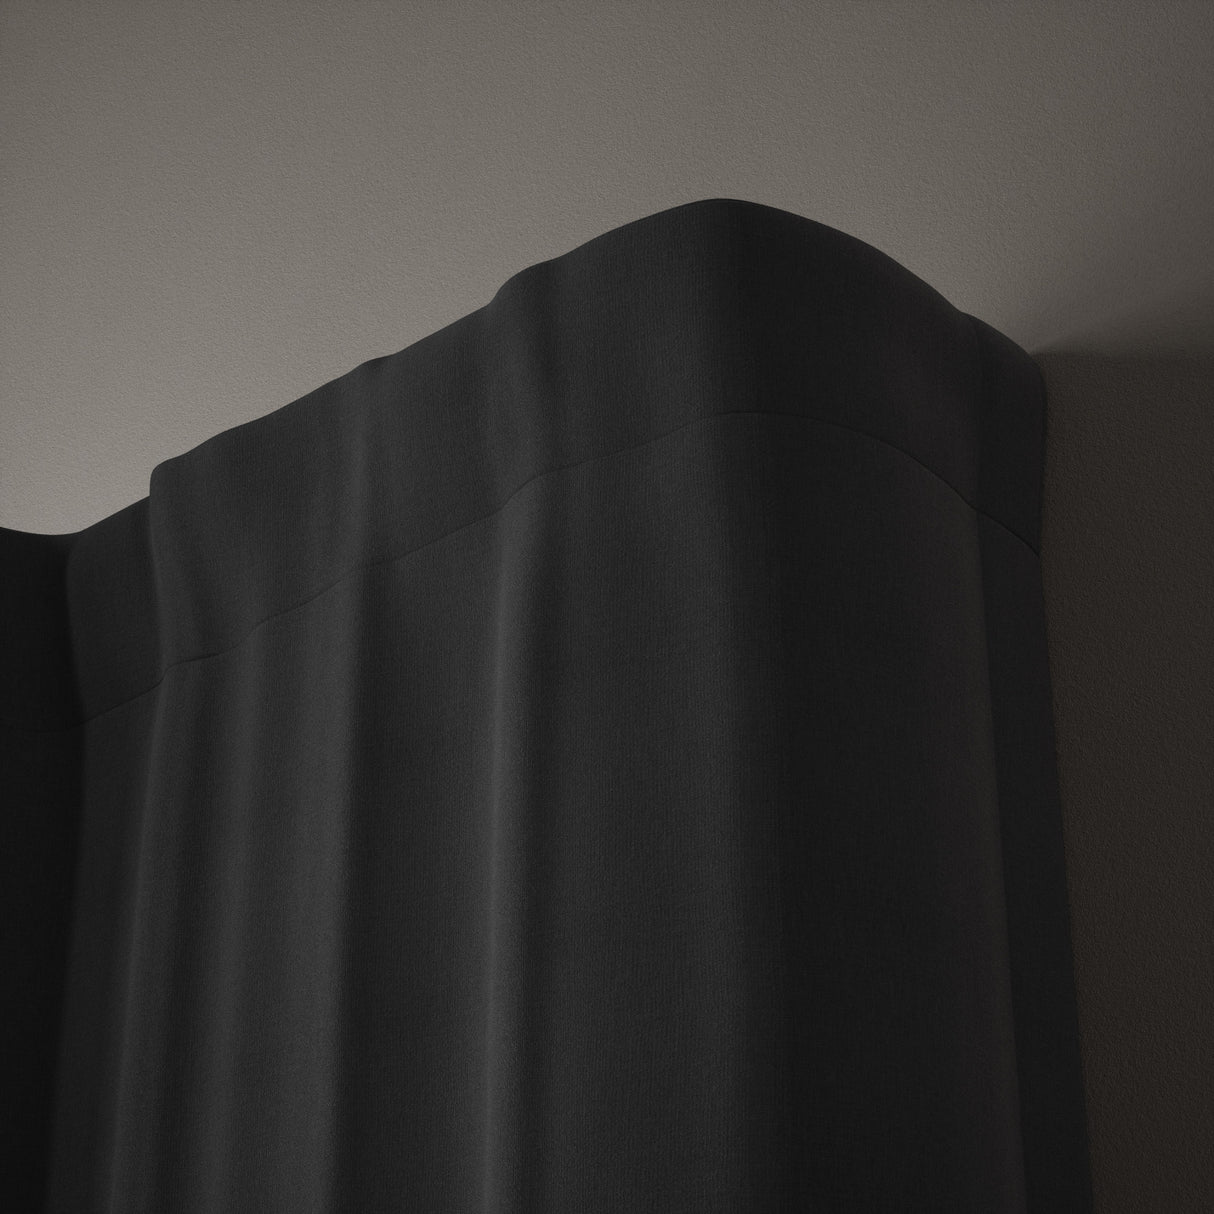 Double Curtain Rods | color: Matte-Nickel | size: 48-88"(122-224cm) | diameter: 3/4"(1.9cm) | https://vimeo.com/625708849